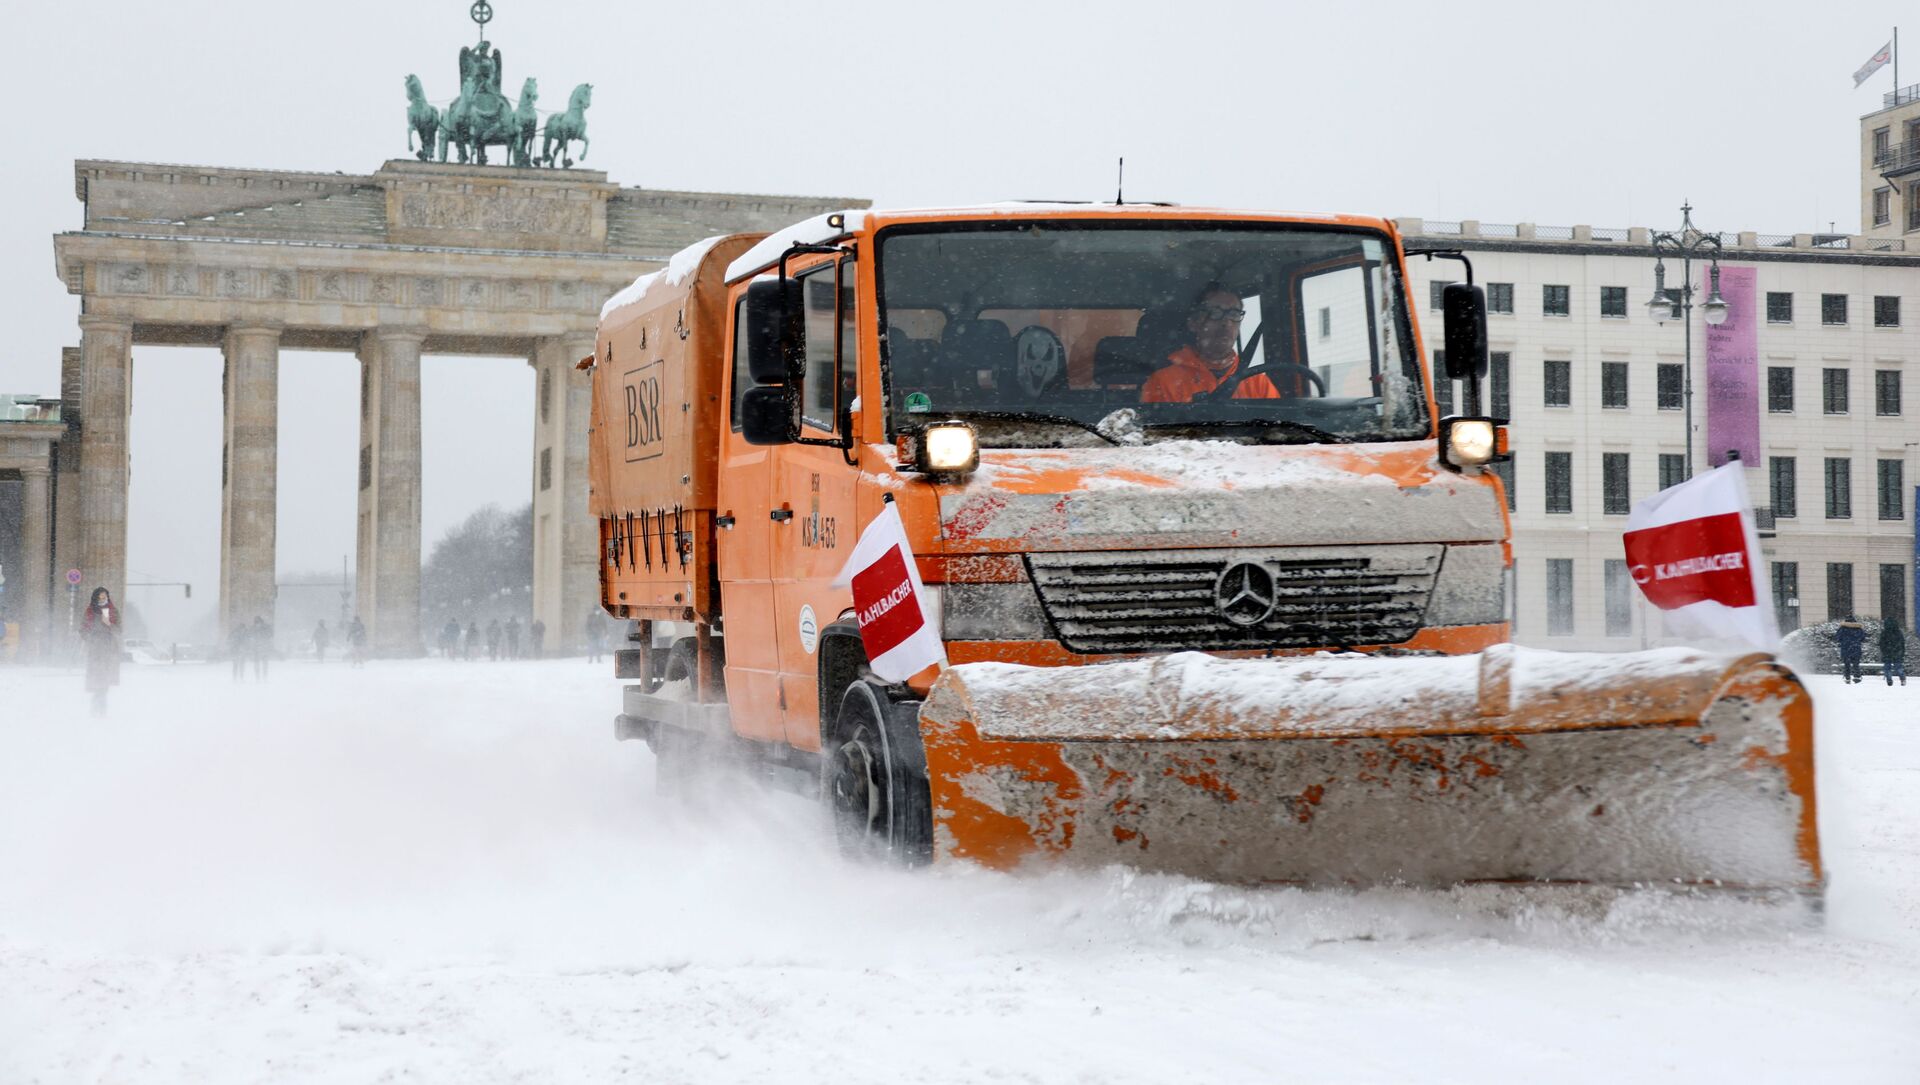  Городские рабочие расчищают снег снегоочистителем перед Бранденбургскими воротами во время снегопада в Берлине, Германия. - Sputnik Moldova, 1920, 27.02.2021